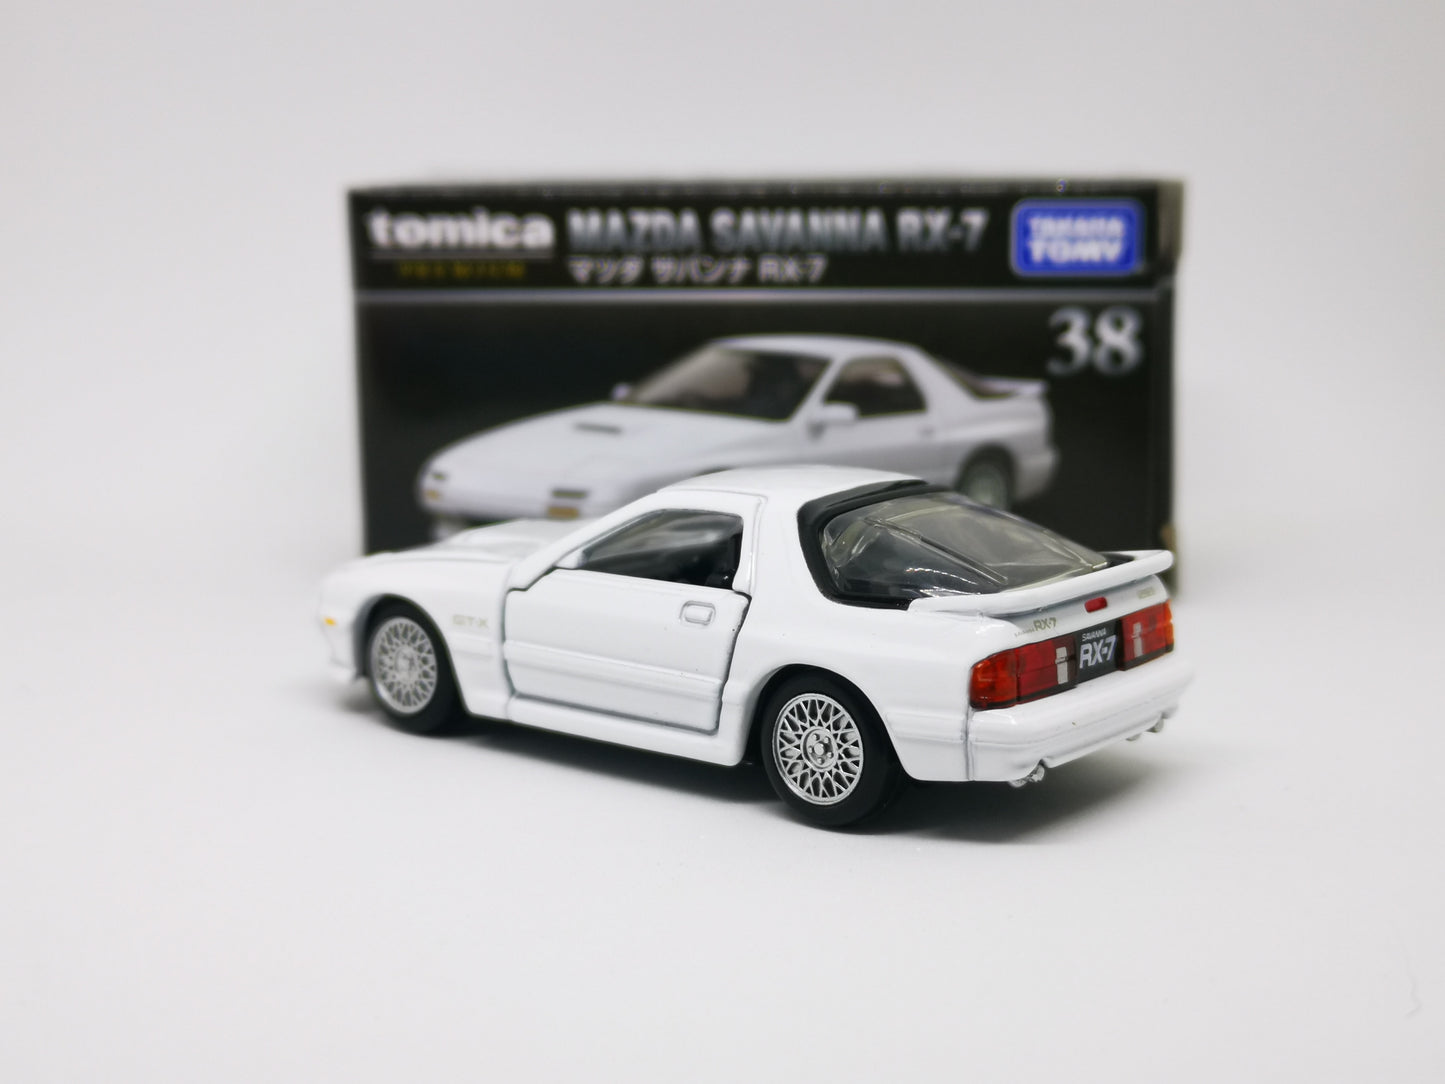 Tomica Premium No.38 Mazda RX7 FC3S 1:62 SCALE